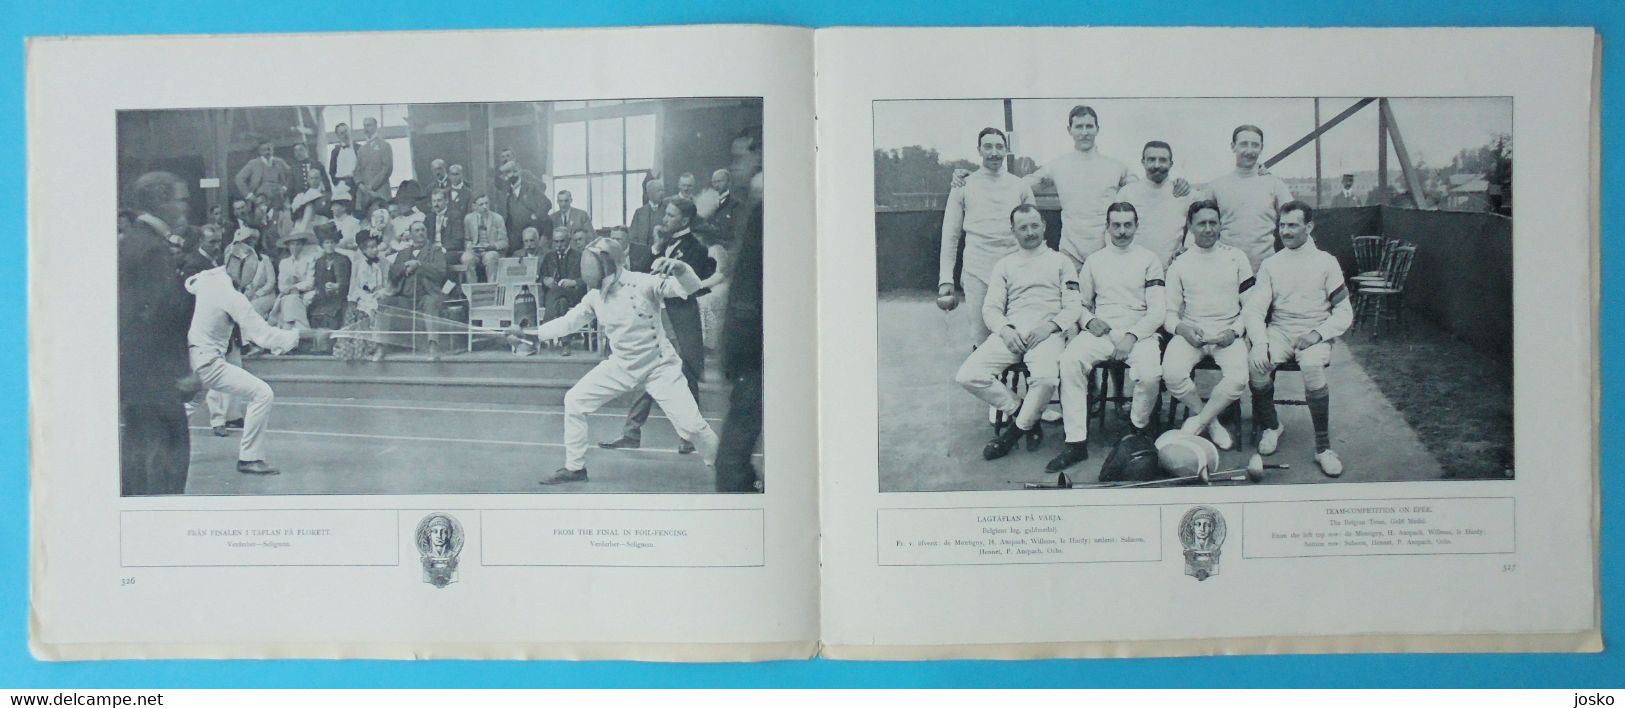 OLYMPIC GAMES STOCKHOLM 1912 - FENCING (Belgium - Belgie is winner) - original vintage programme escrime fechten scherma